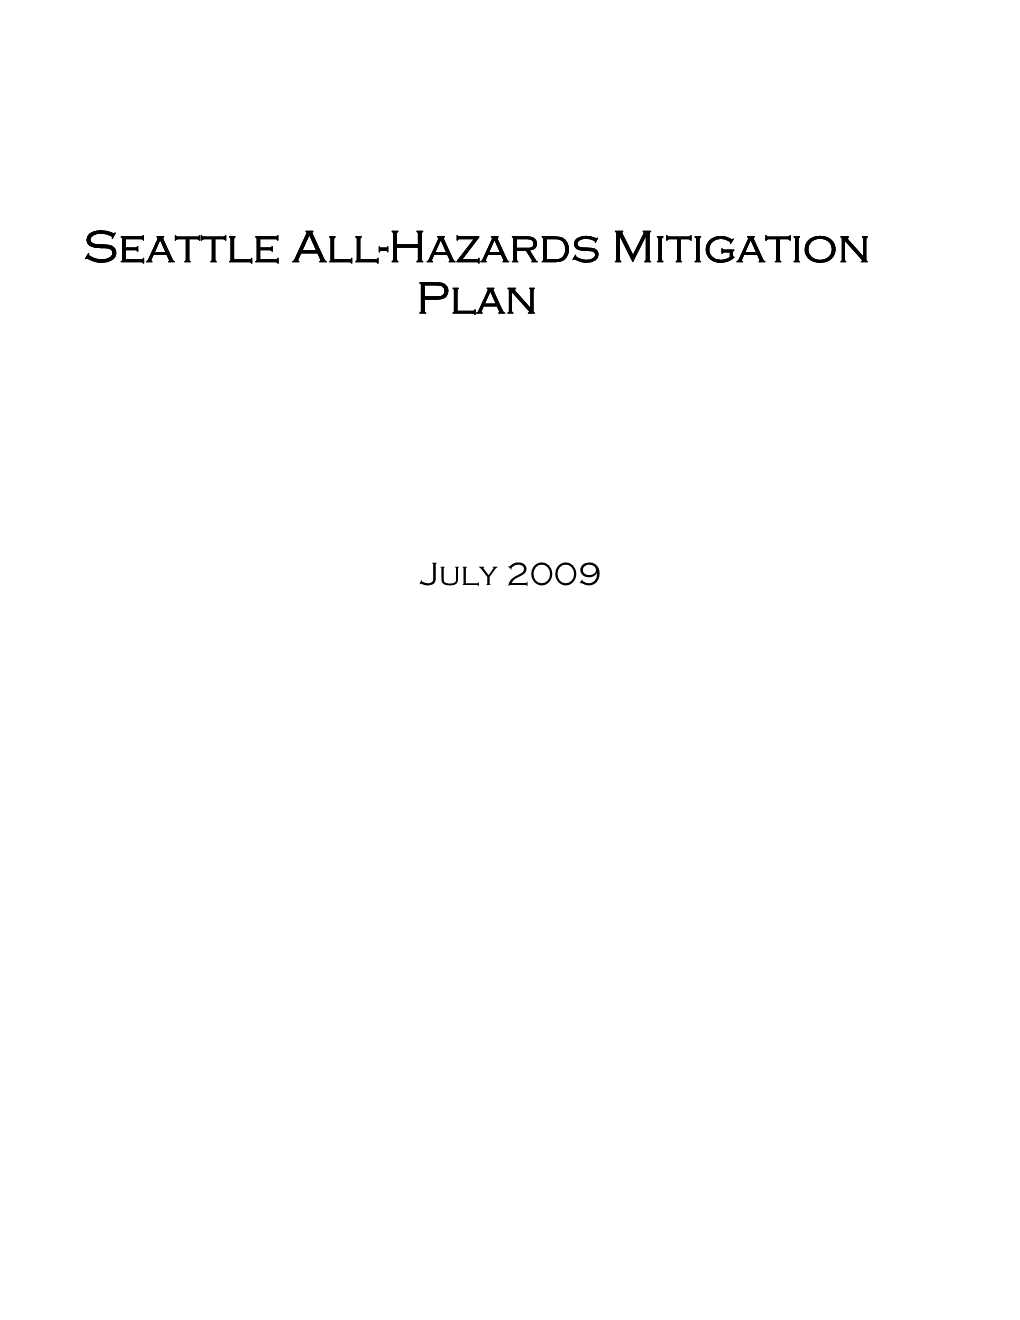 All-Hazards Mitigation Plan